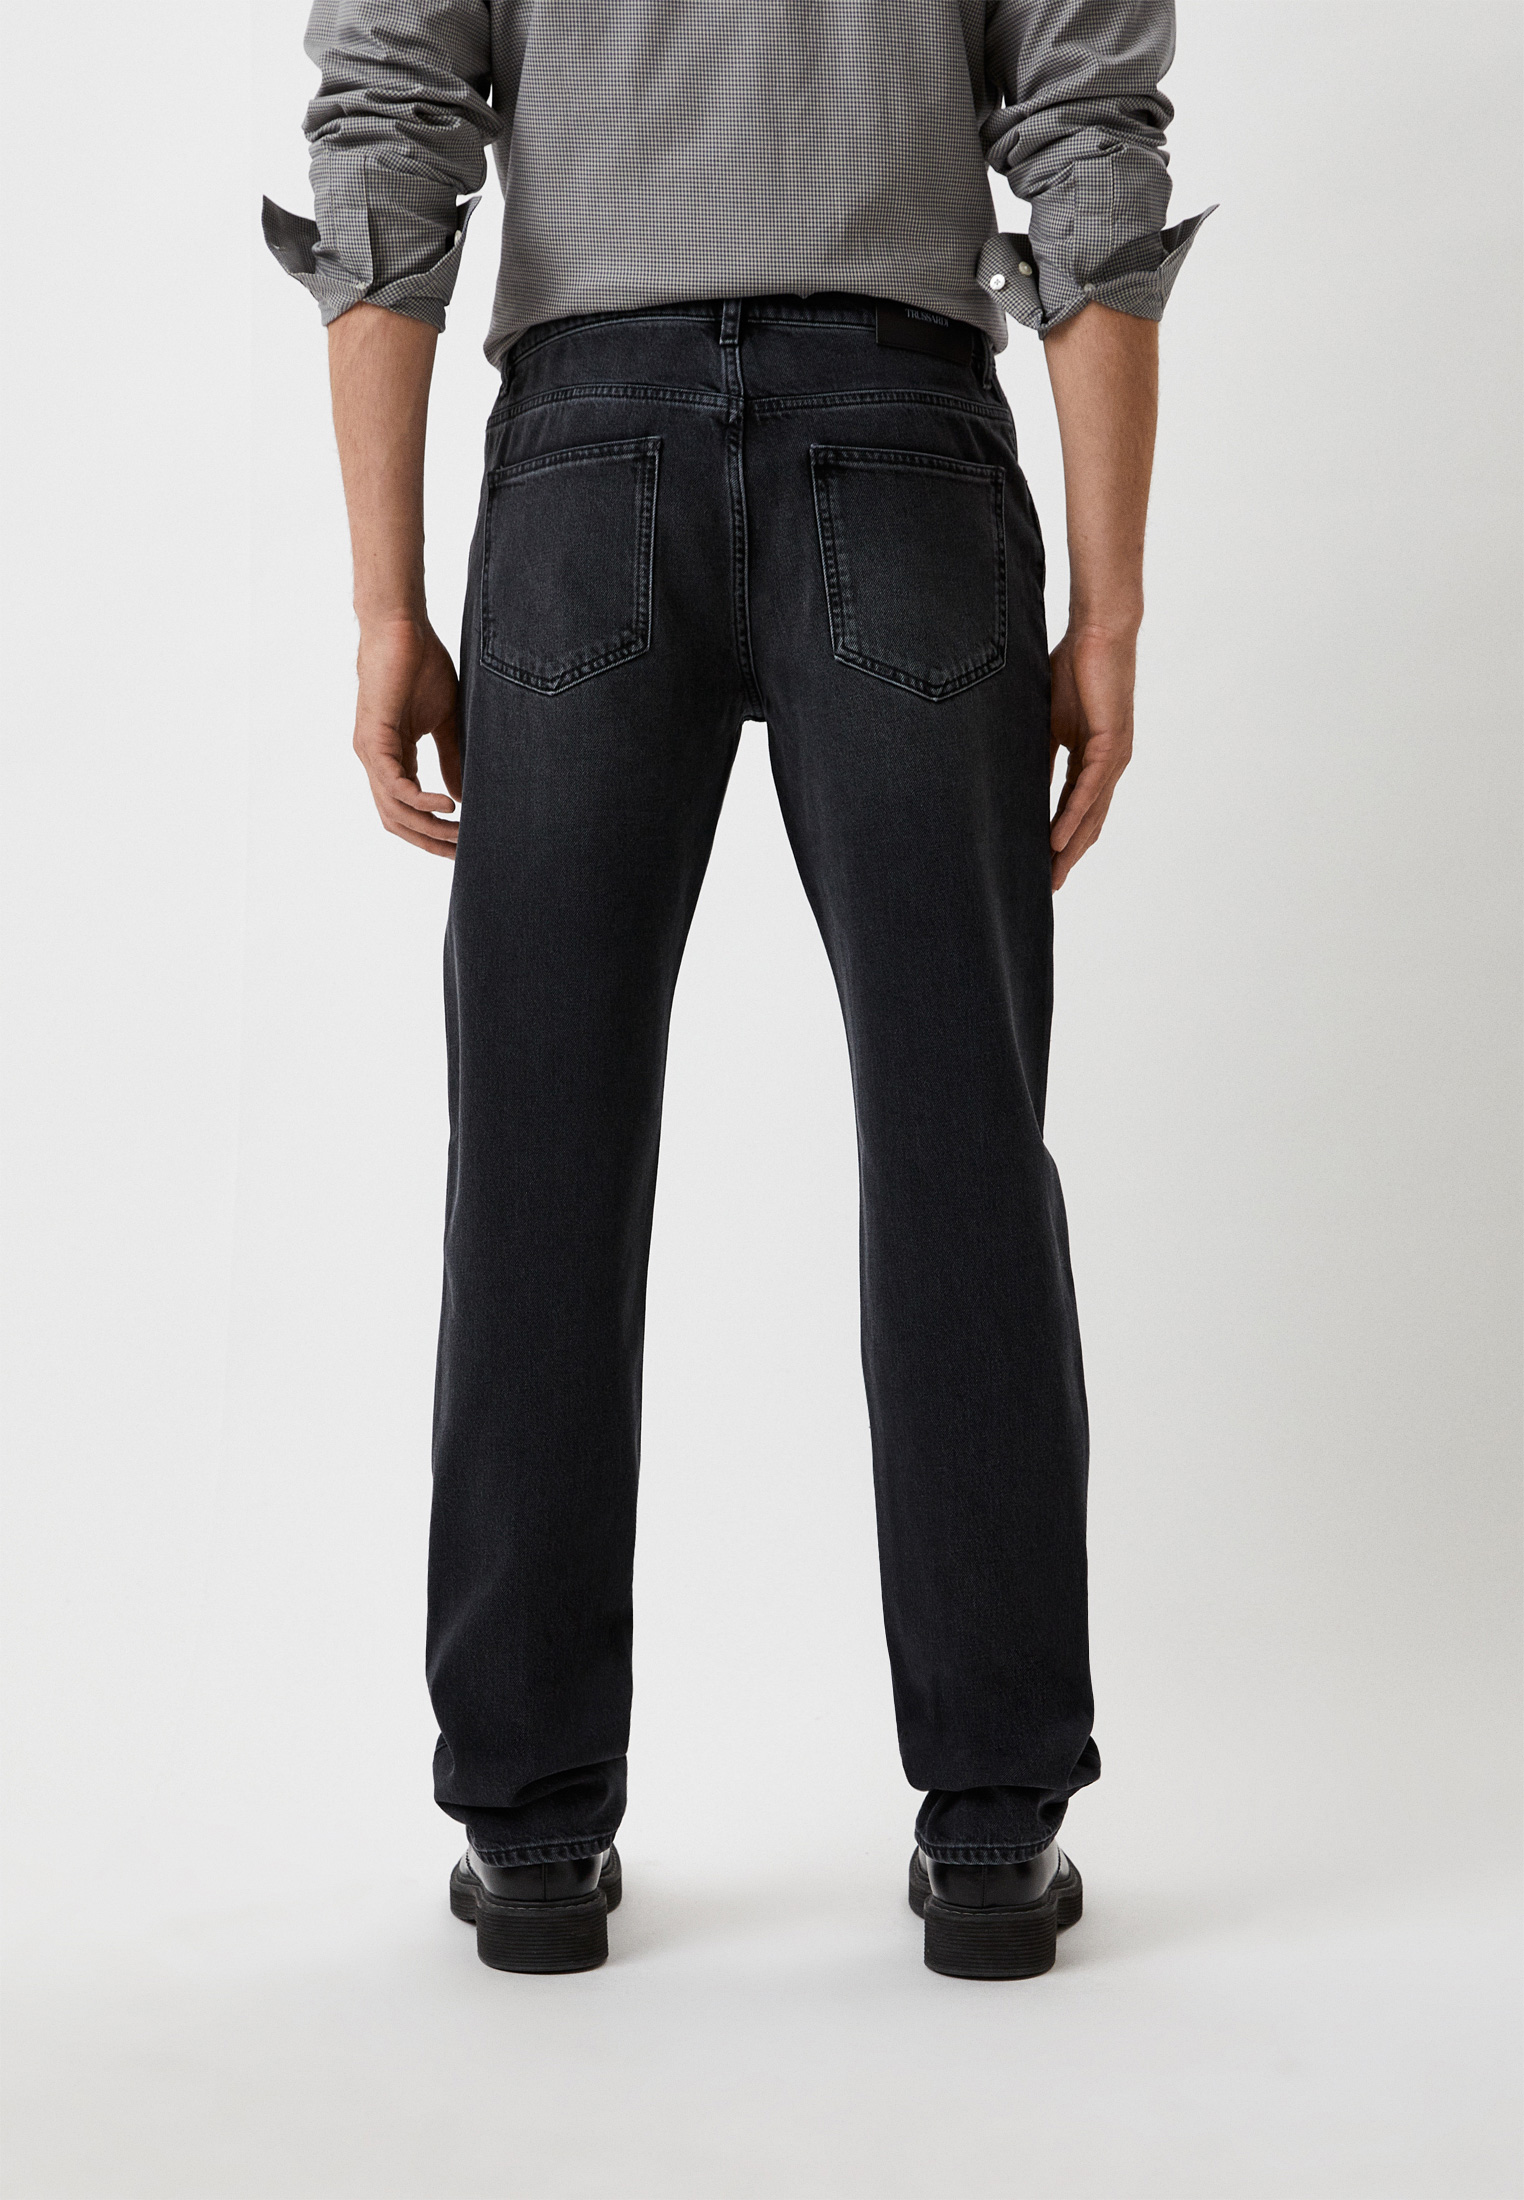 Мужские прямые джинсы Trussardi (Труссарди) 52J00001-1T006026: изображение 3